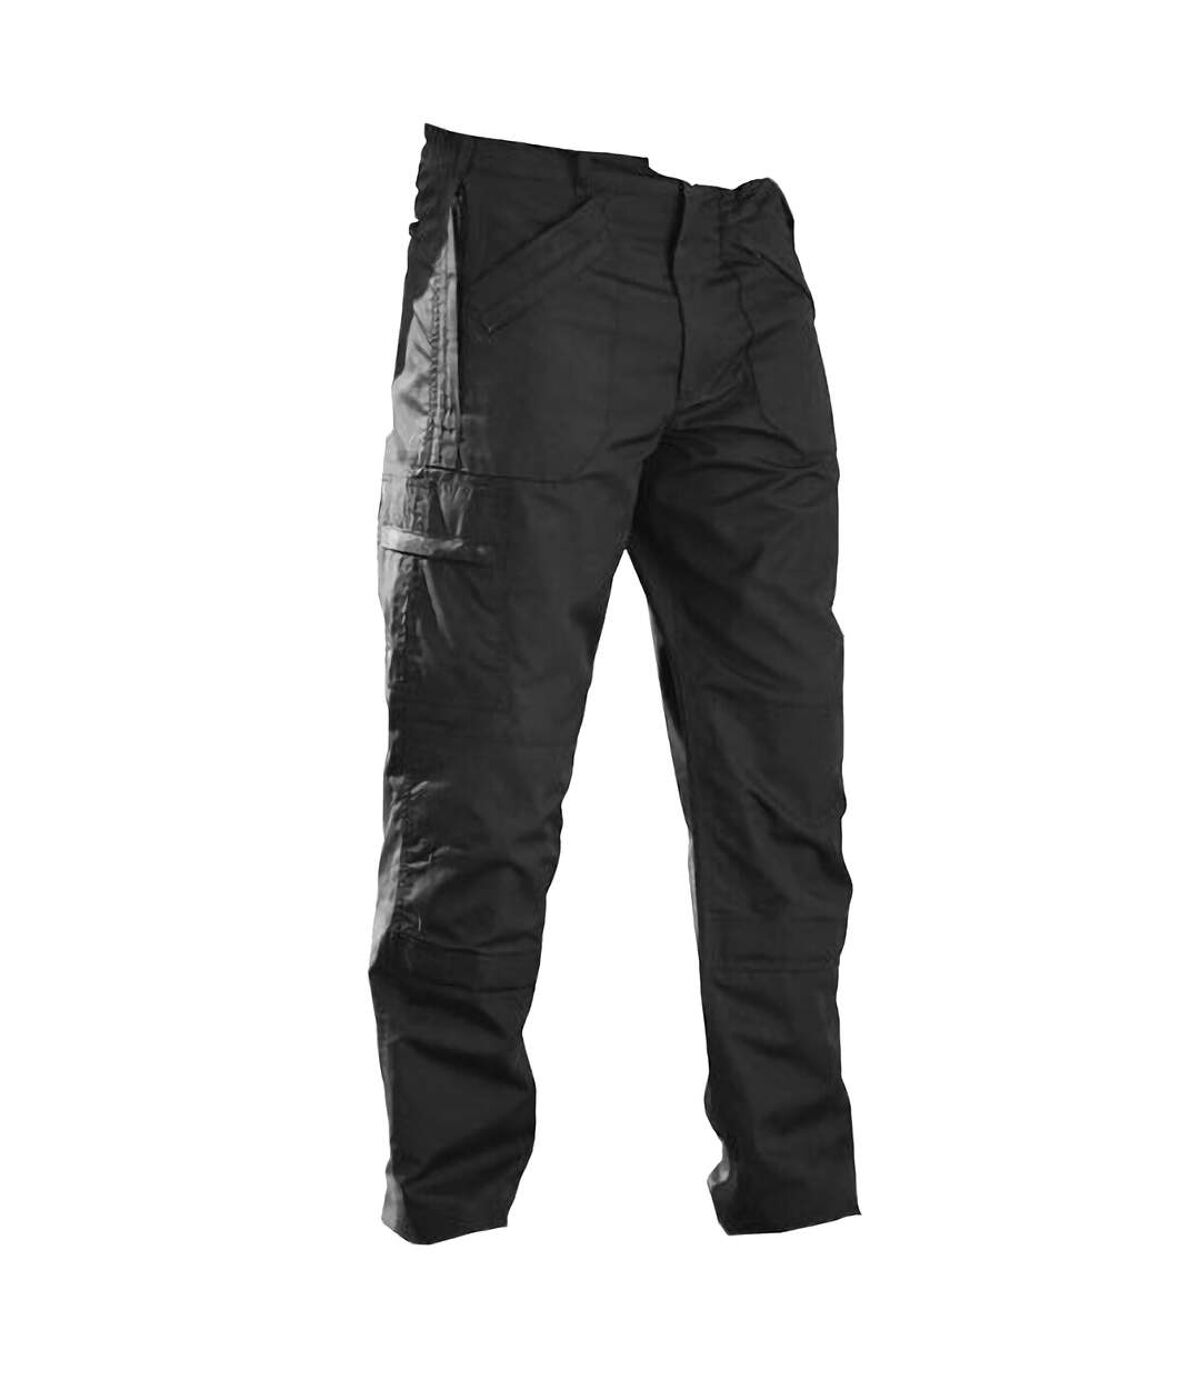 Regatta - Pantalon de travail, coupe courte - Homme (Noir) - UTBC1492